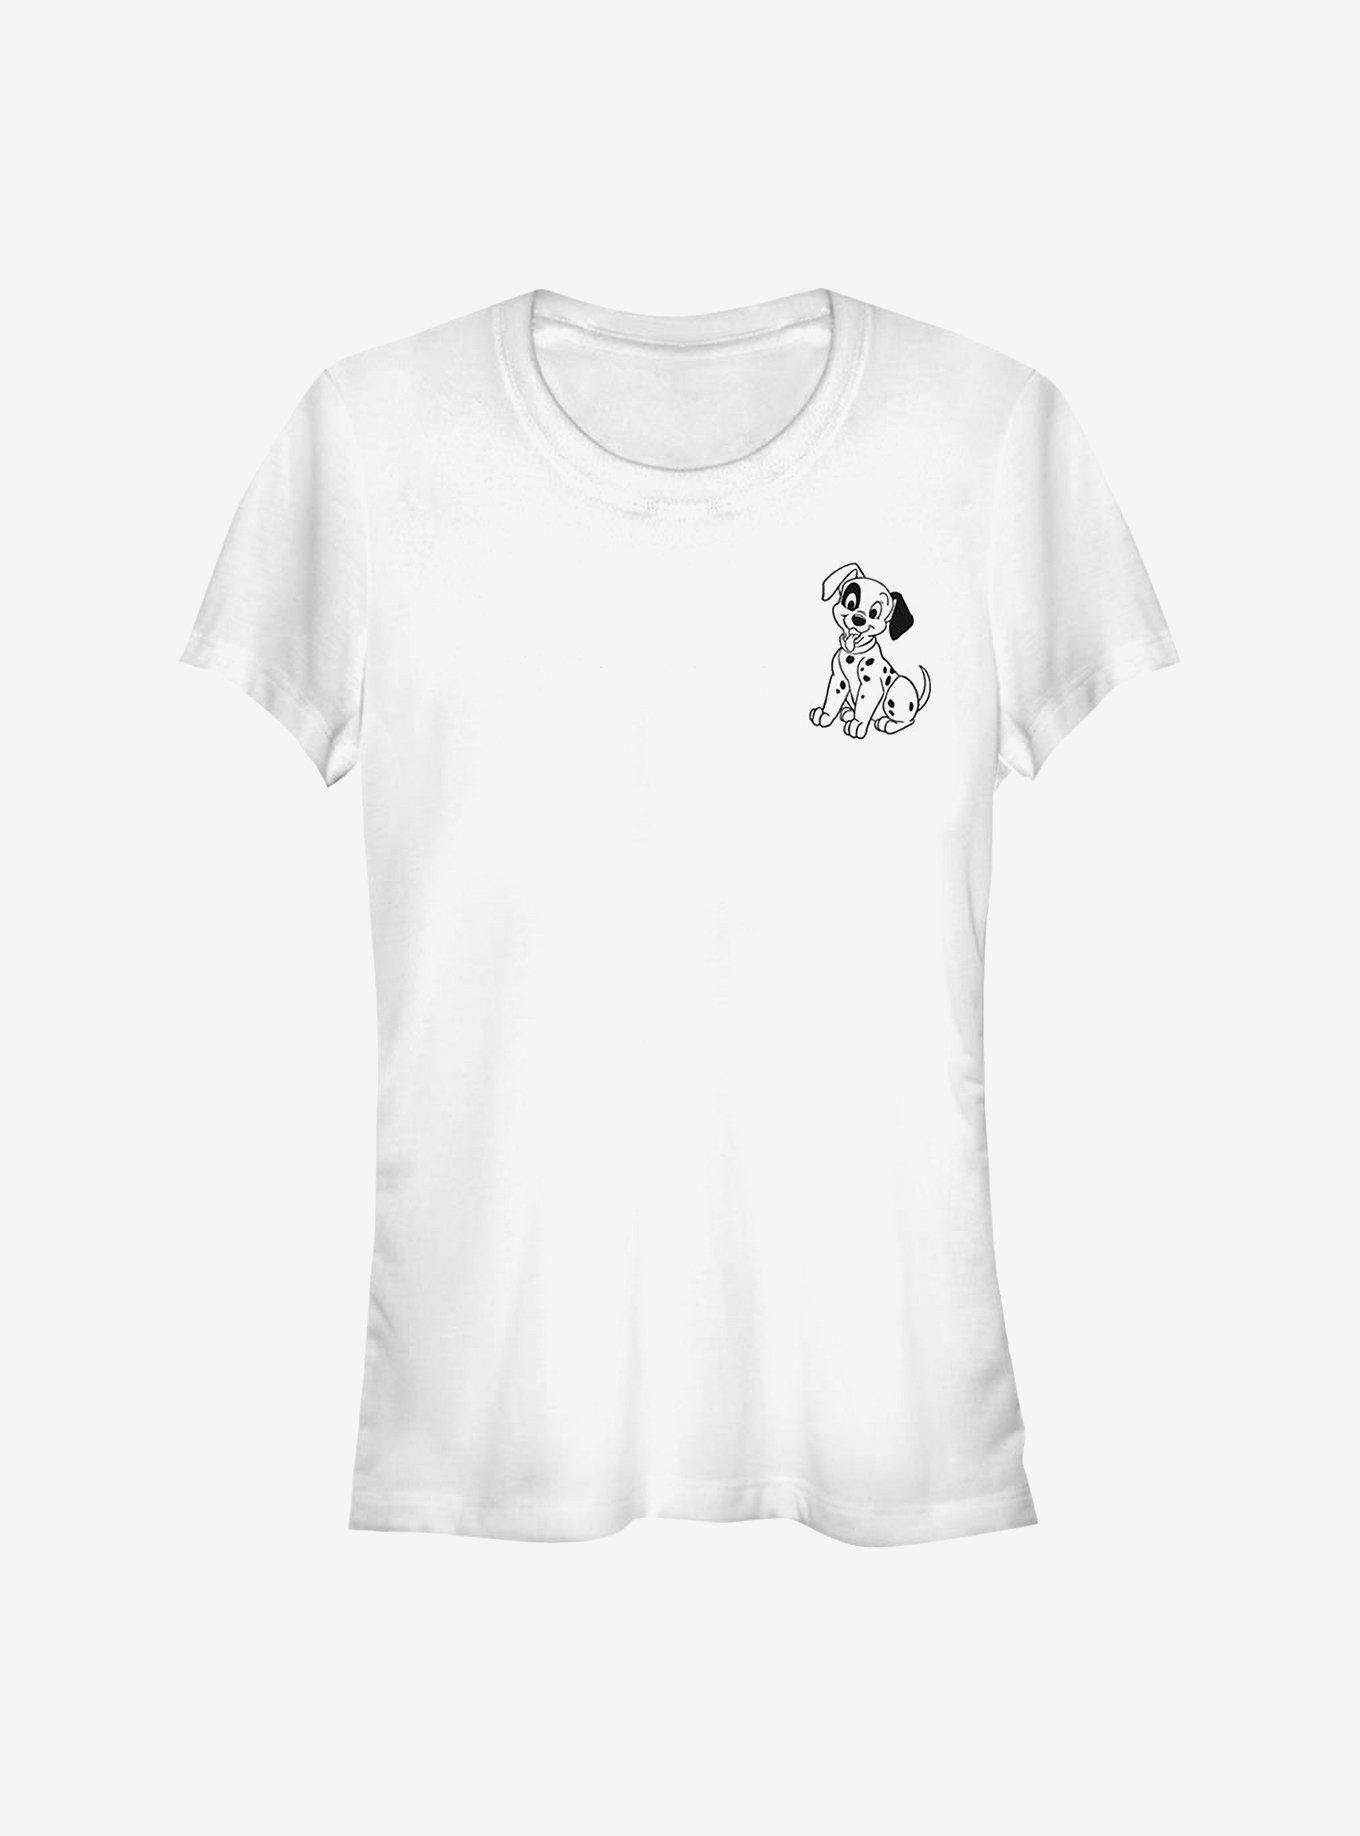 Disney 101 Dalmatians Patch Line Girls T-Shirt, WHITE, hi-res